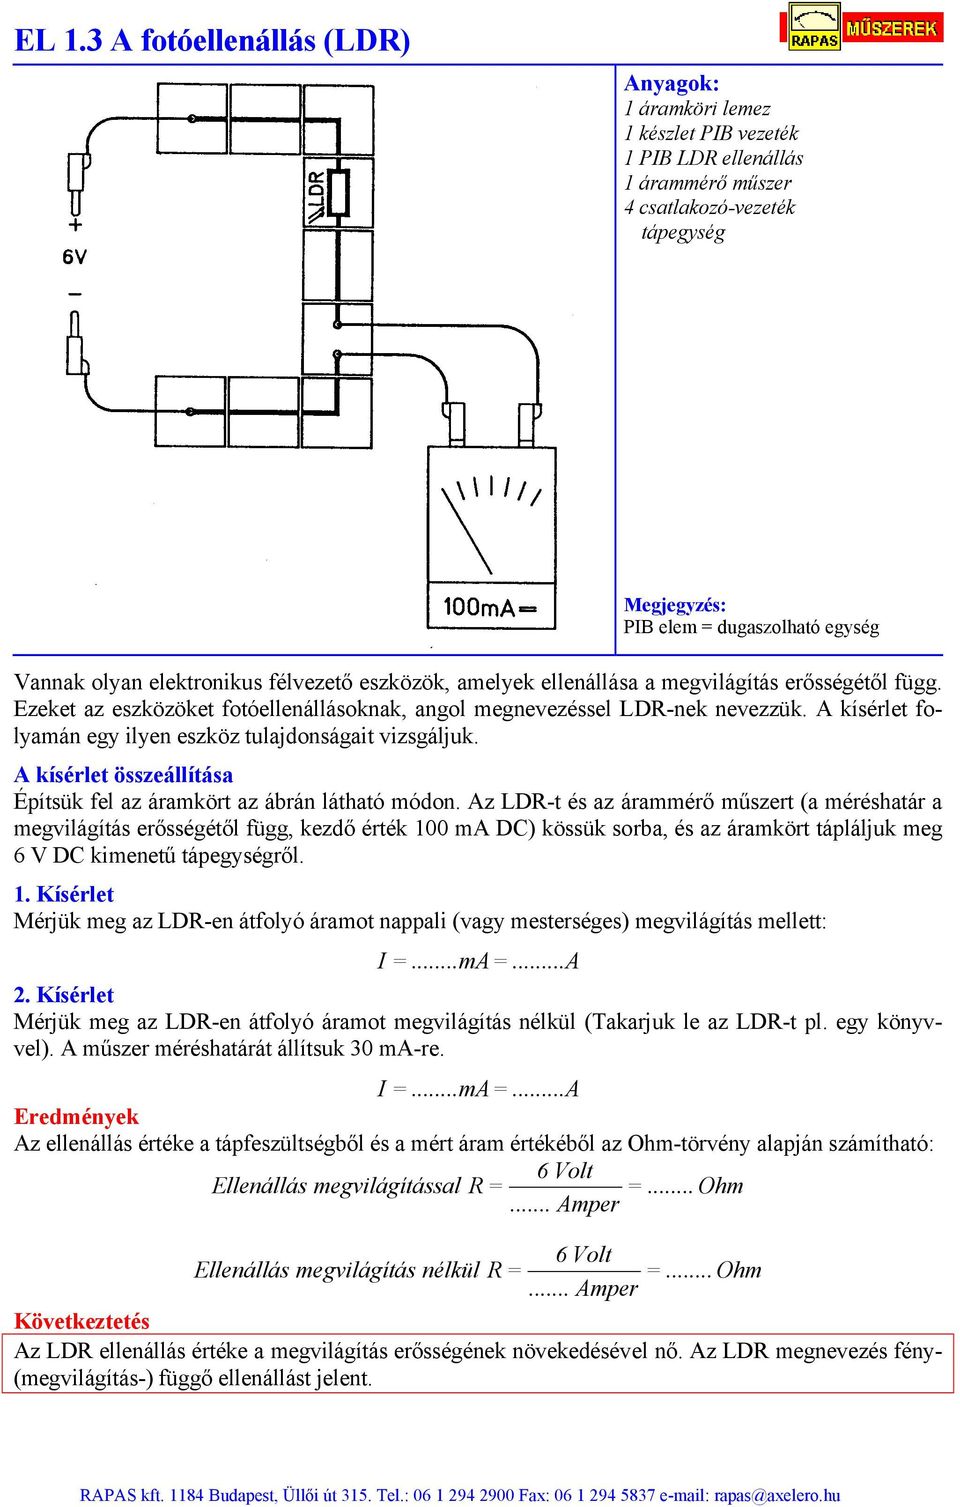 Az LDR-t és az árammérő műszert (a méréshatár a megvilágítás erősségétől függ, kezdő érték 100 ma DC) kössük sorba, és az áramkört tápláljuk meg 6 V DC kimenetű tápegységről. 1. Mérjük meg az LDR-en átfolyó áramot nappali (vagy mesterséges) megvilágítás mellett: I =.